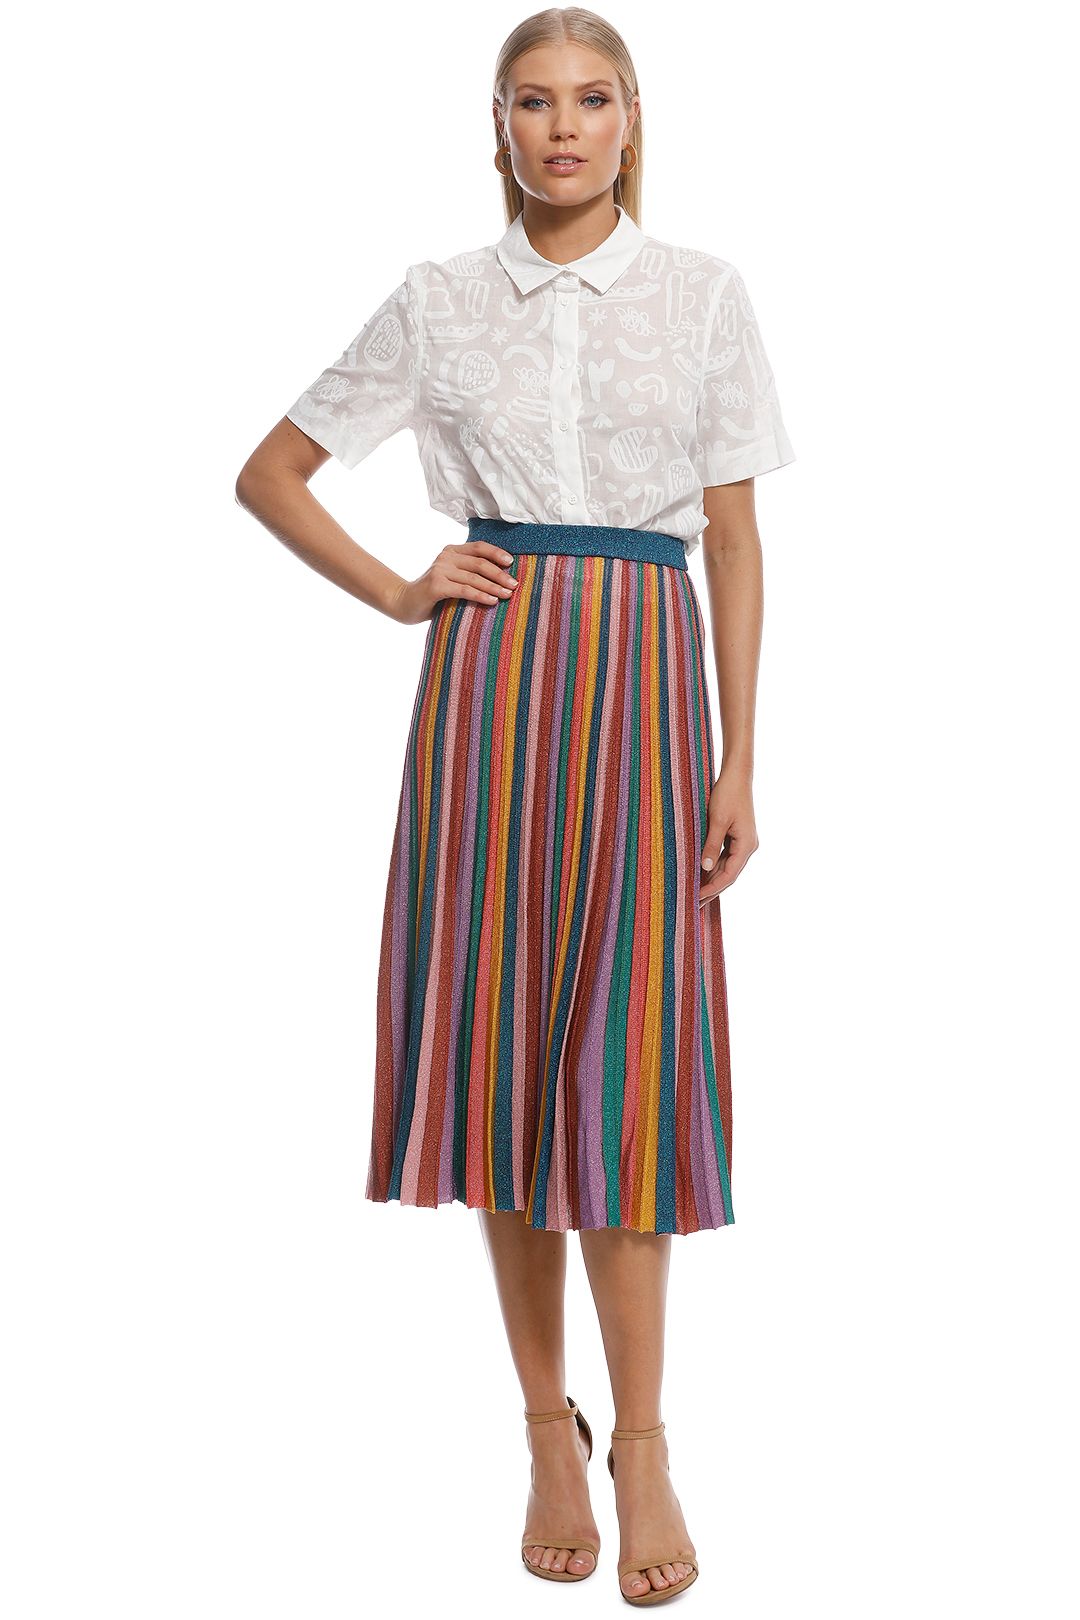 Gorman - Rainbow Knit Skirt - Multi - Front